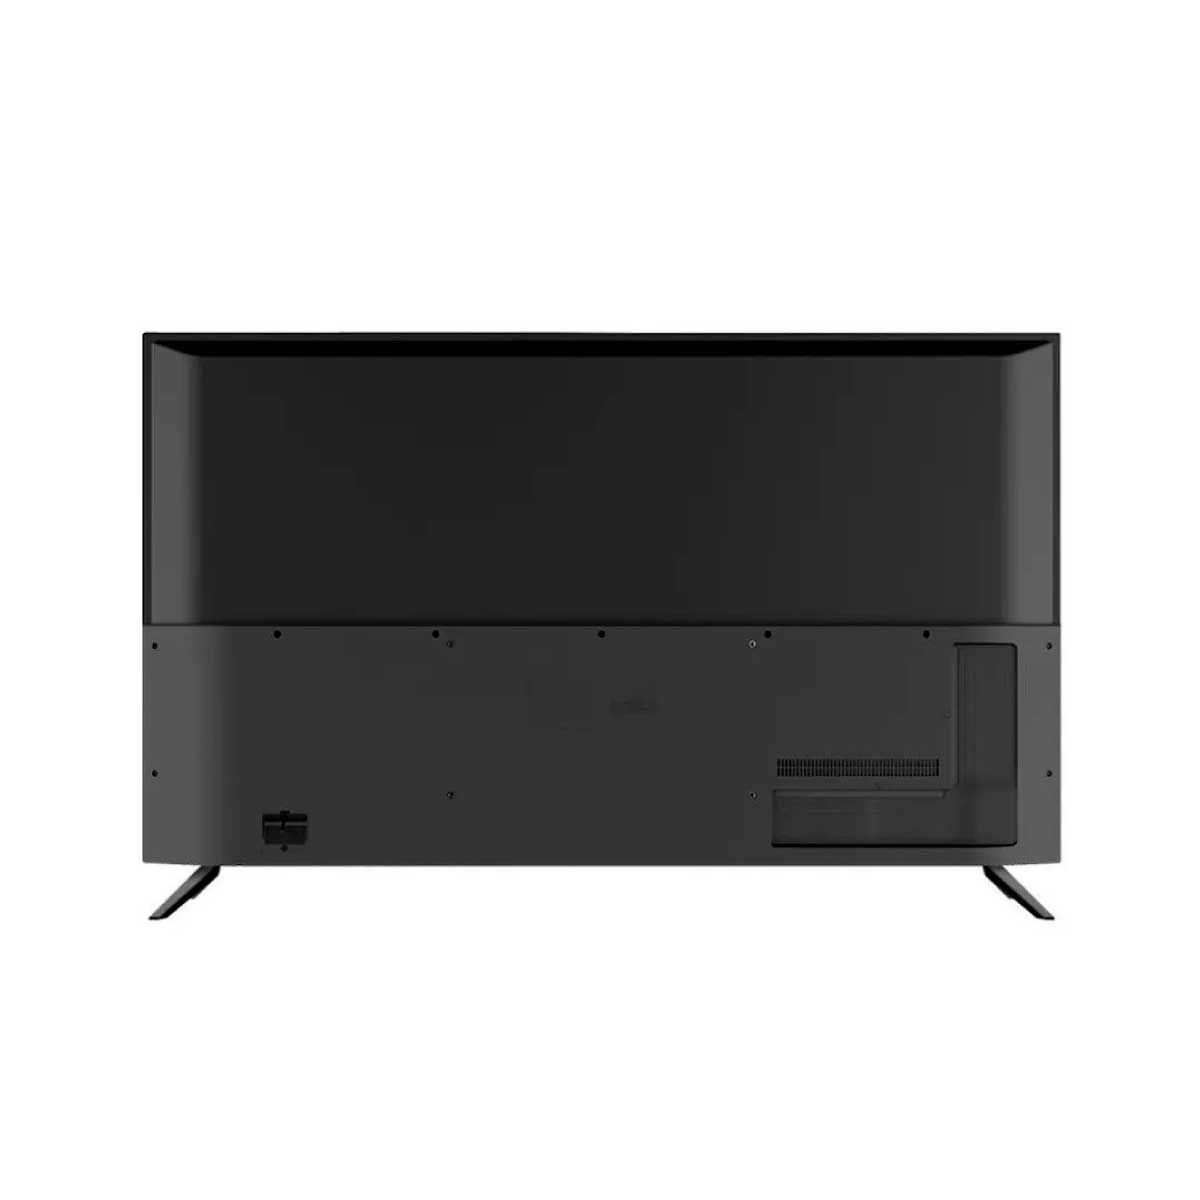 HAIER  LED Digital TV รุ่น H32F6000 ดิจิตอลทีวี ขนาด 32 นิ้ว